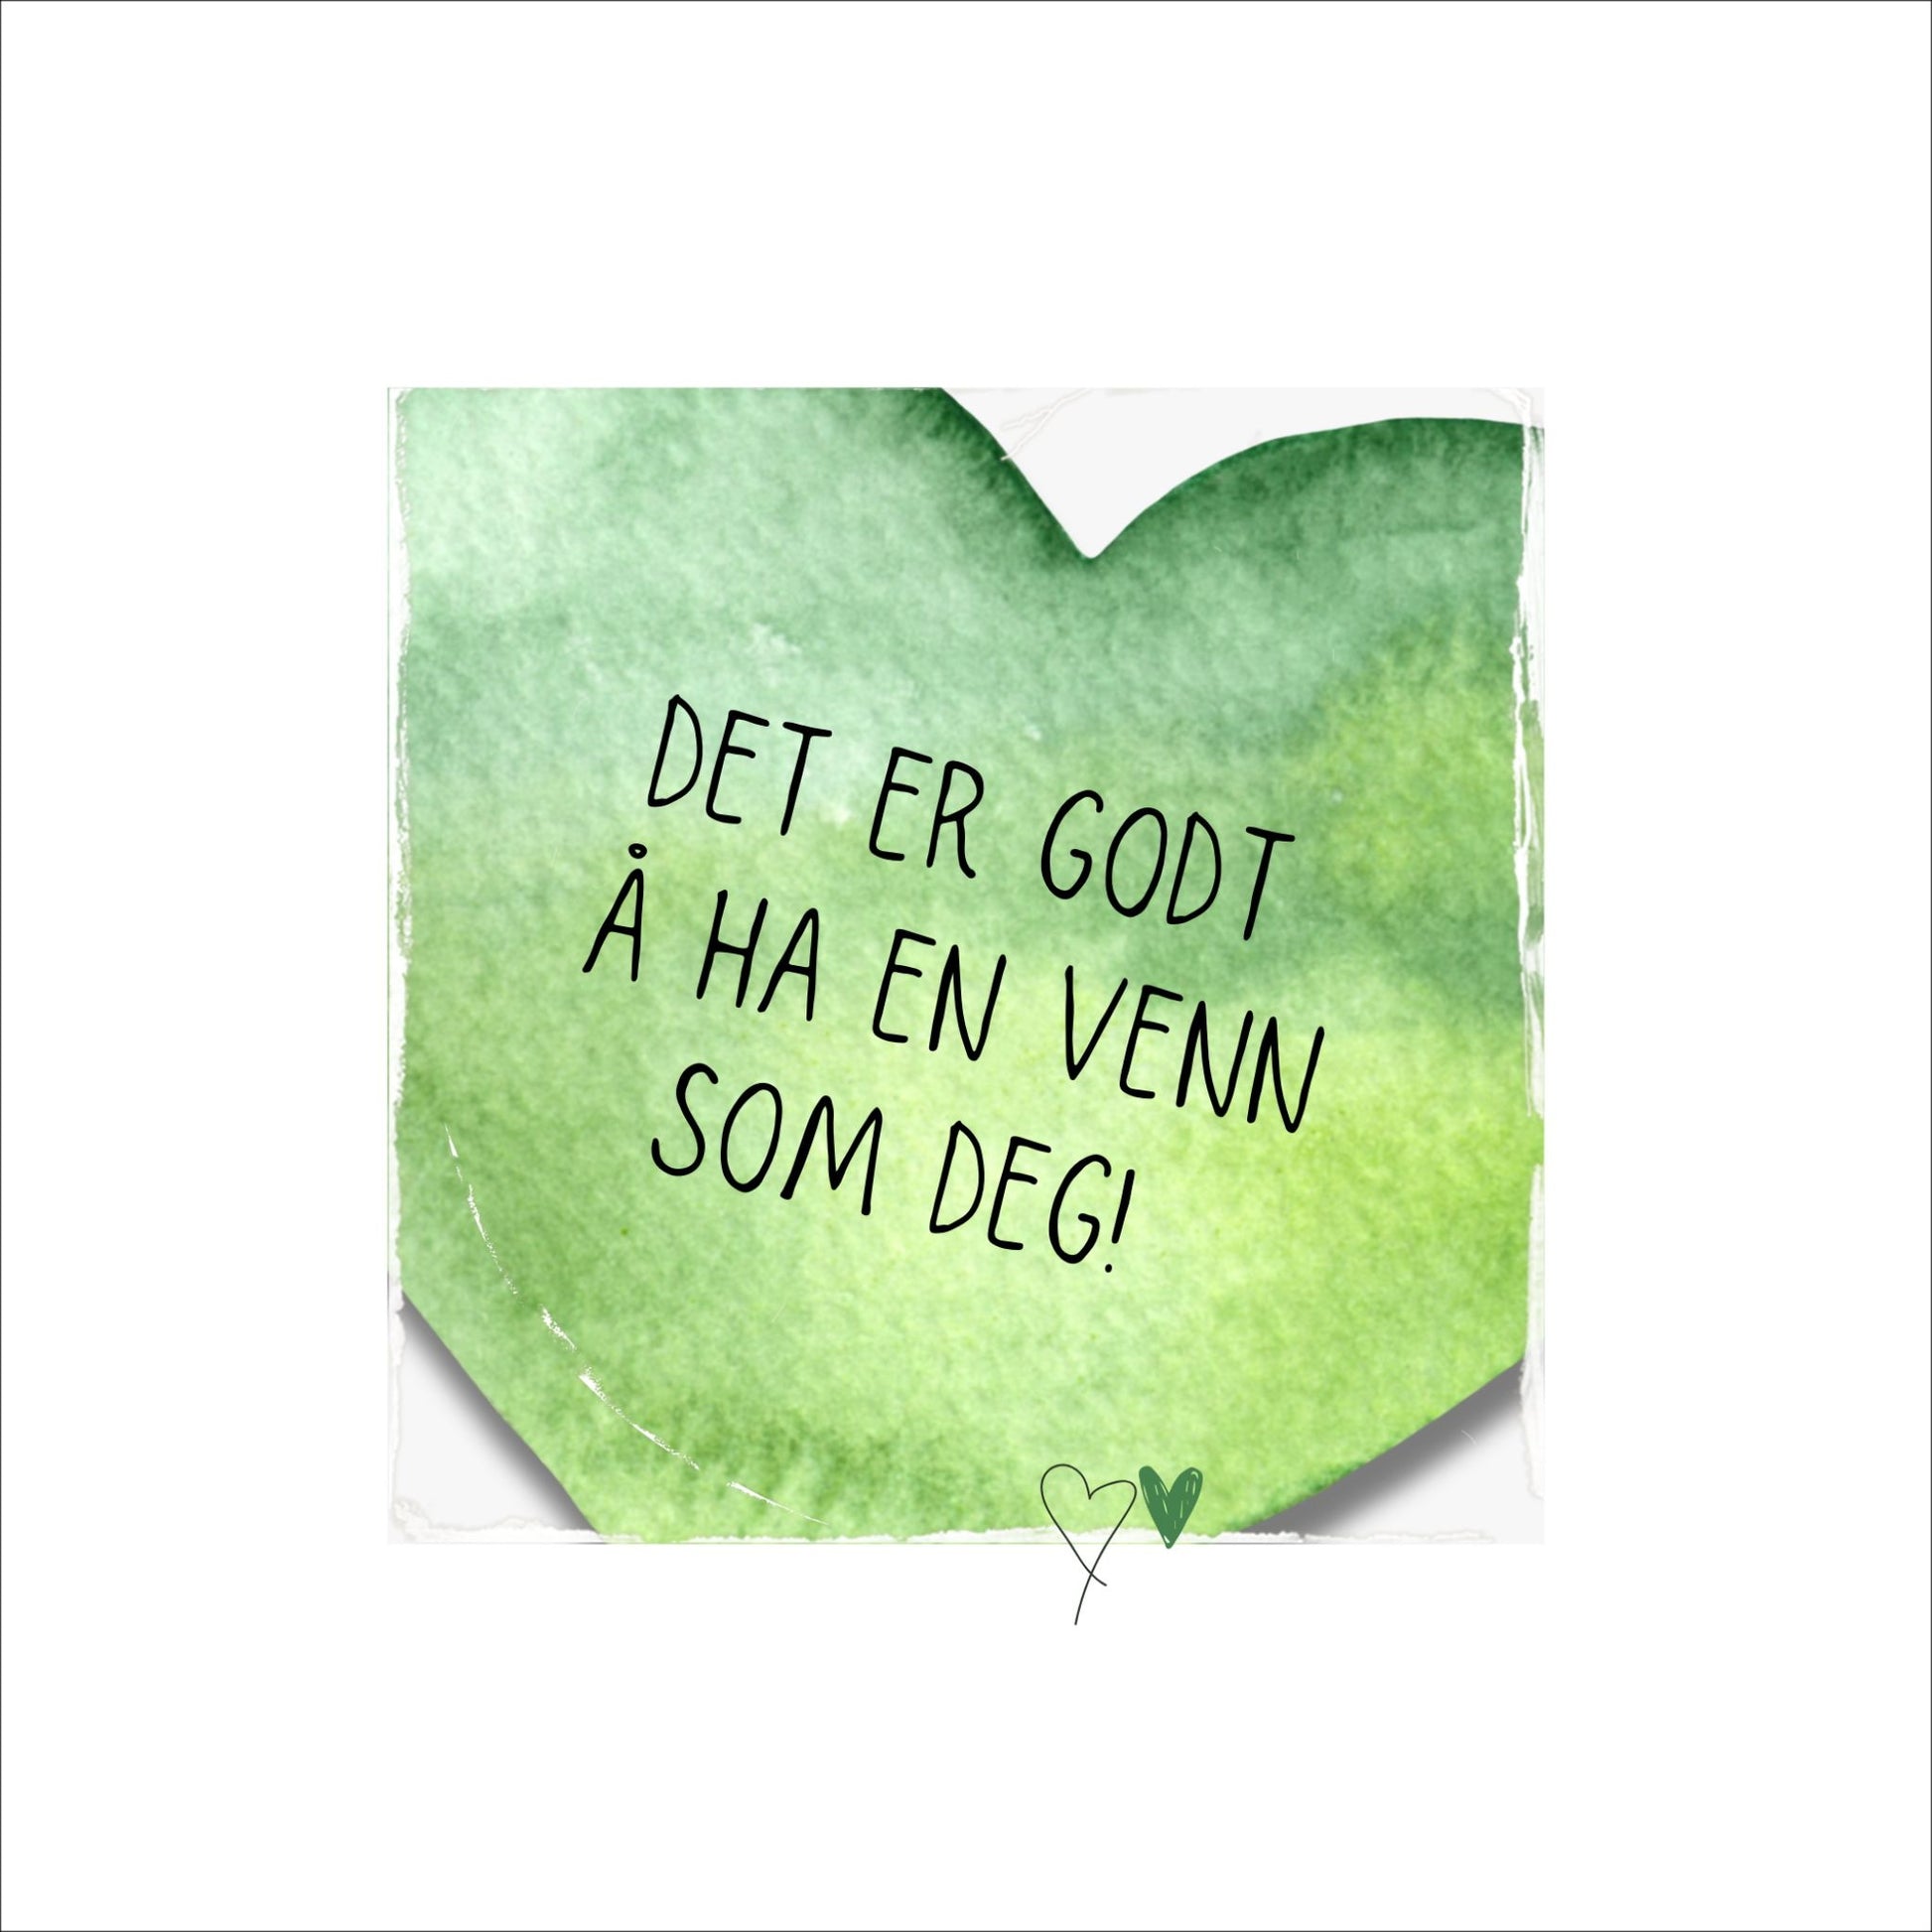 Plakat med grønt hjerte og tekst "Det er godt å ha en venn som deg". Med hvit kant på 4 cm. 